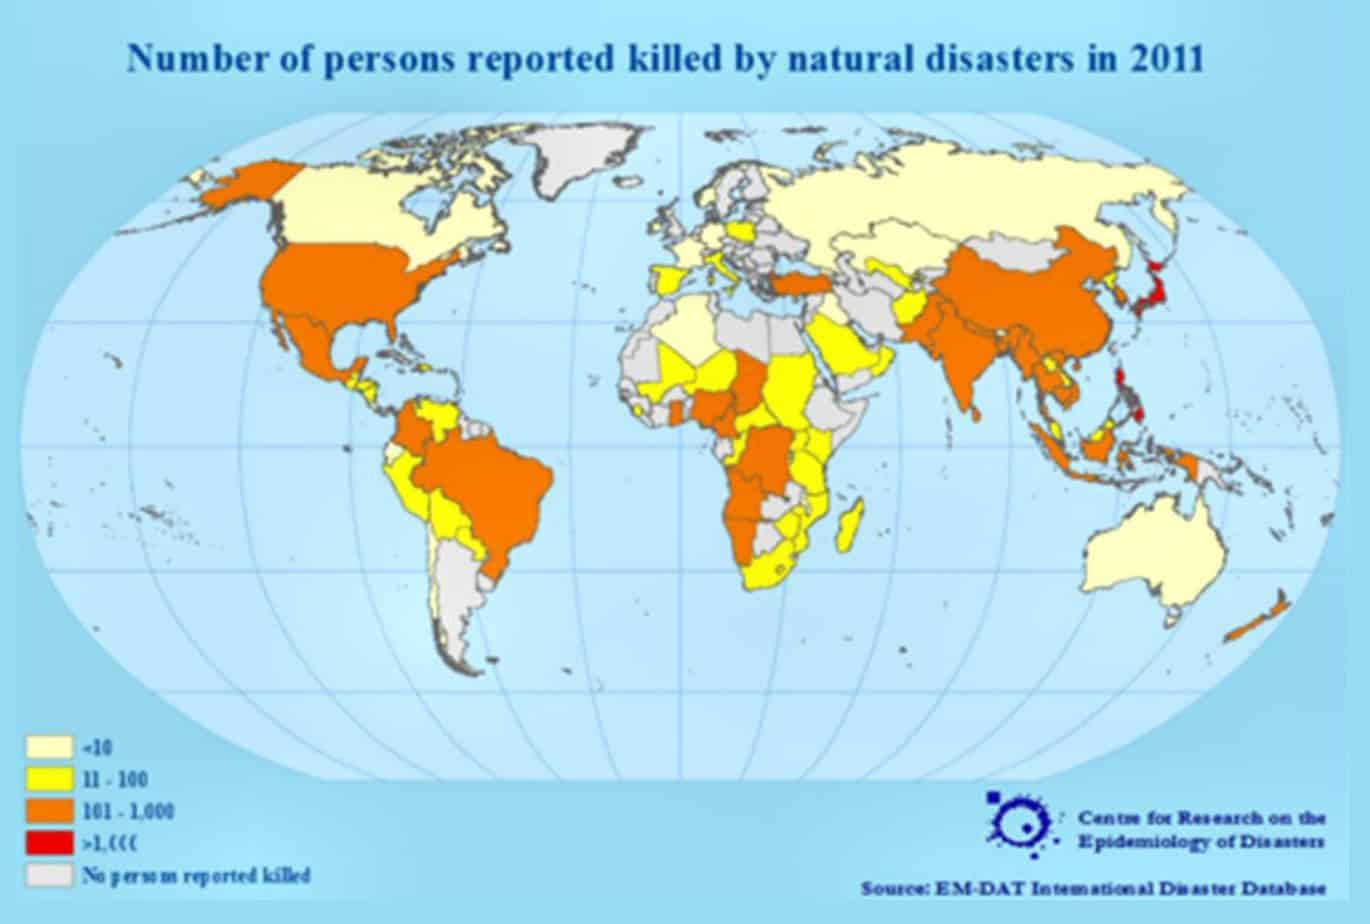 Grafici relativi al numero di decessi a seguito di disastri naturali nel periodo 1900-2011